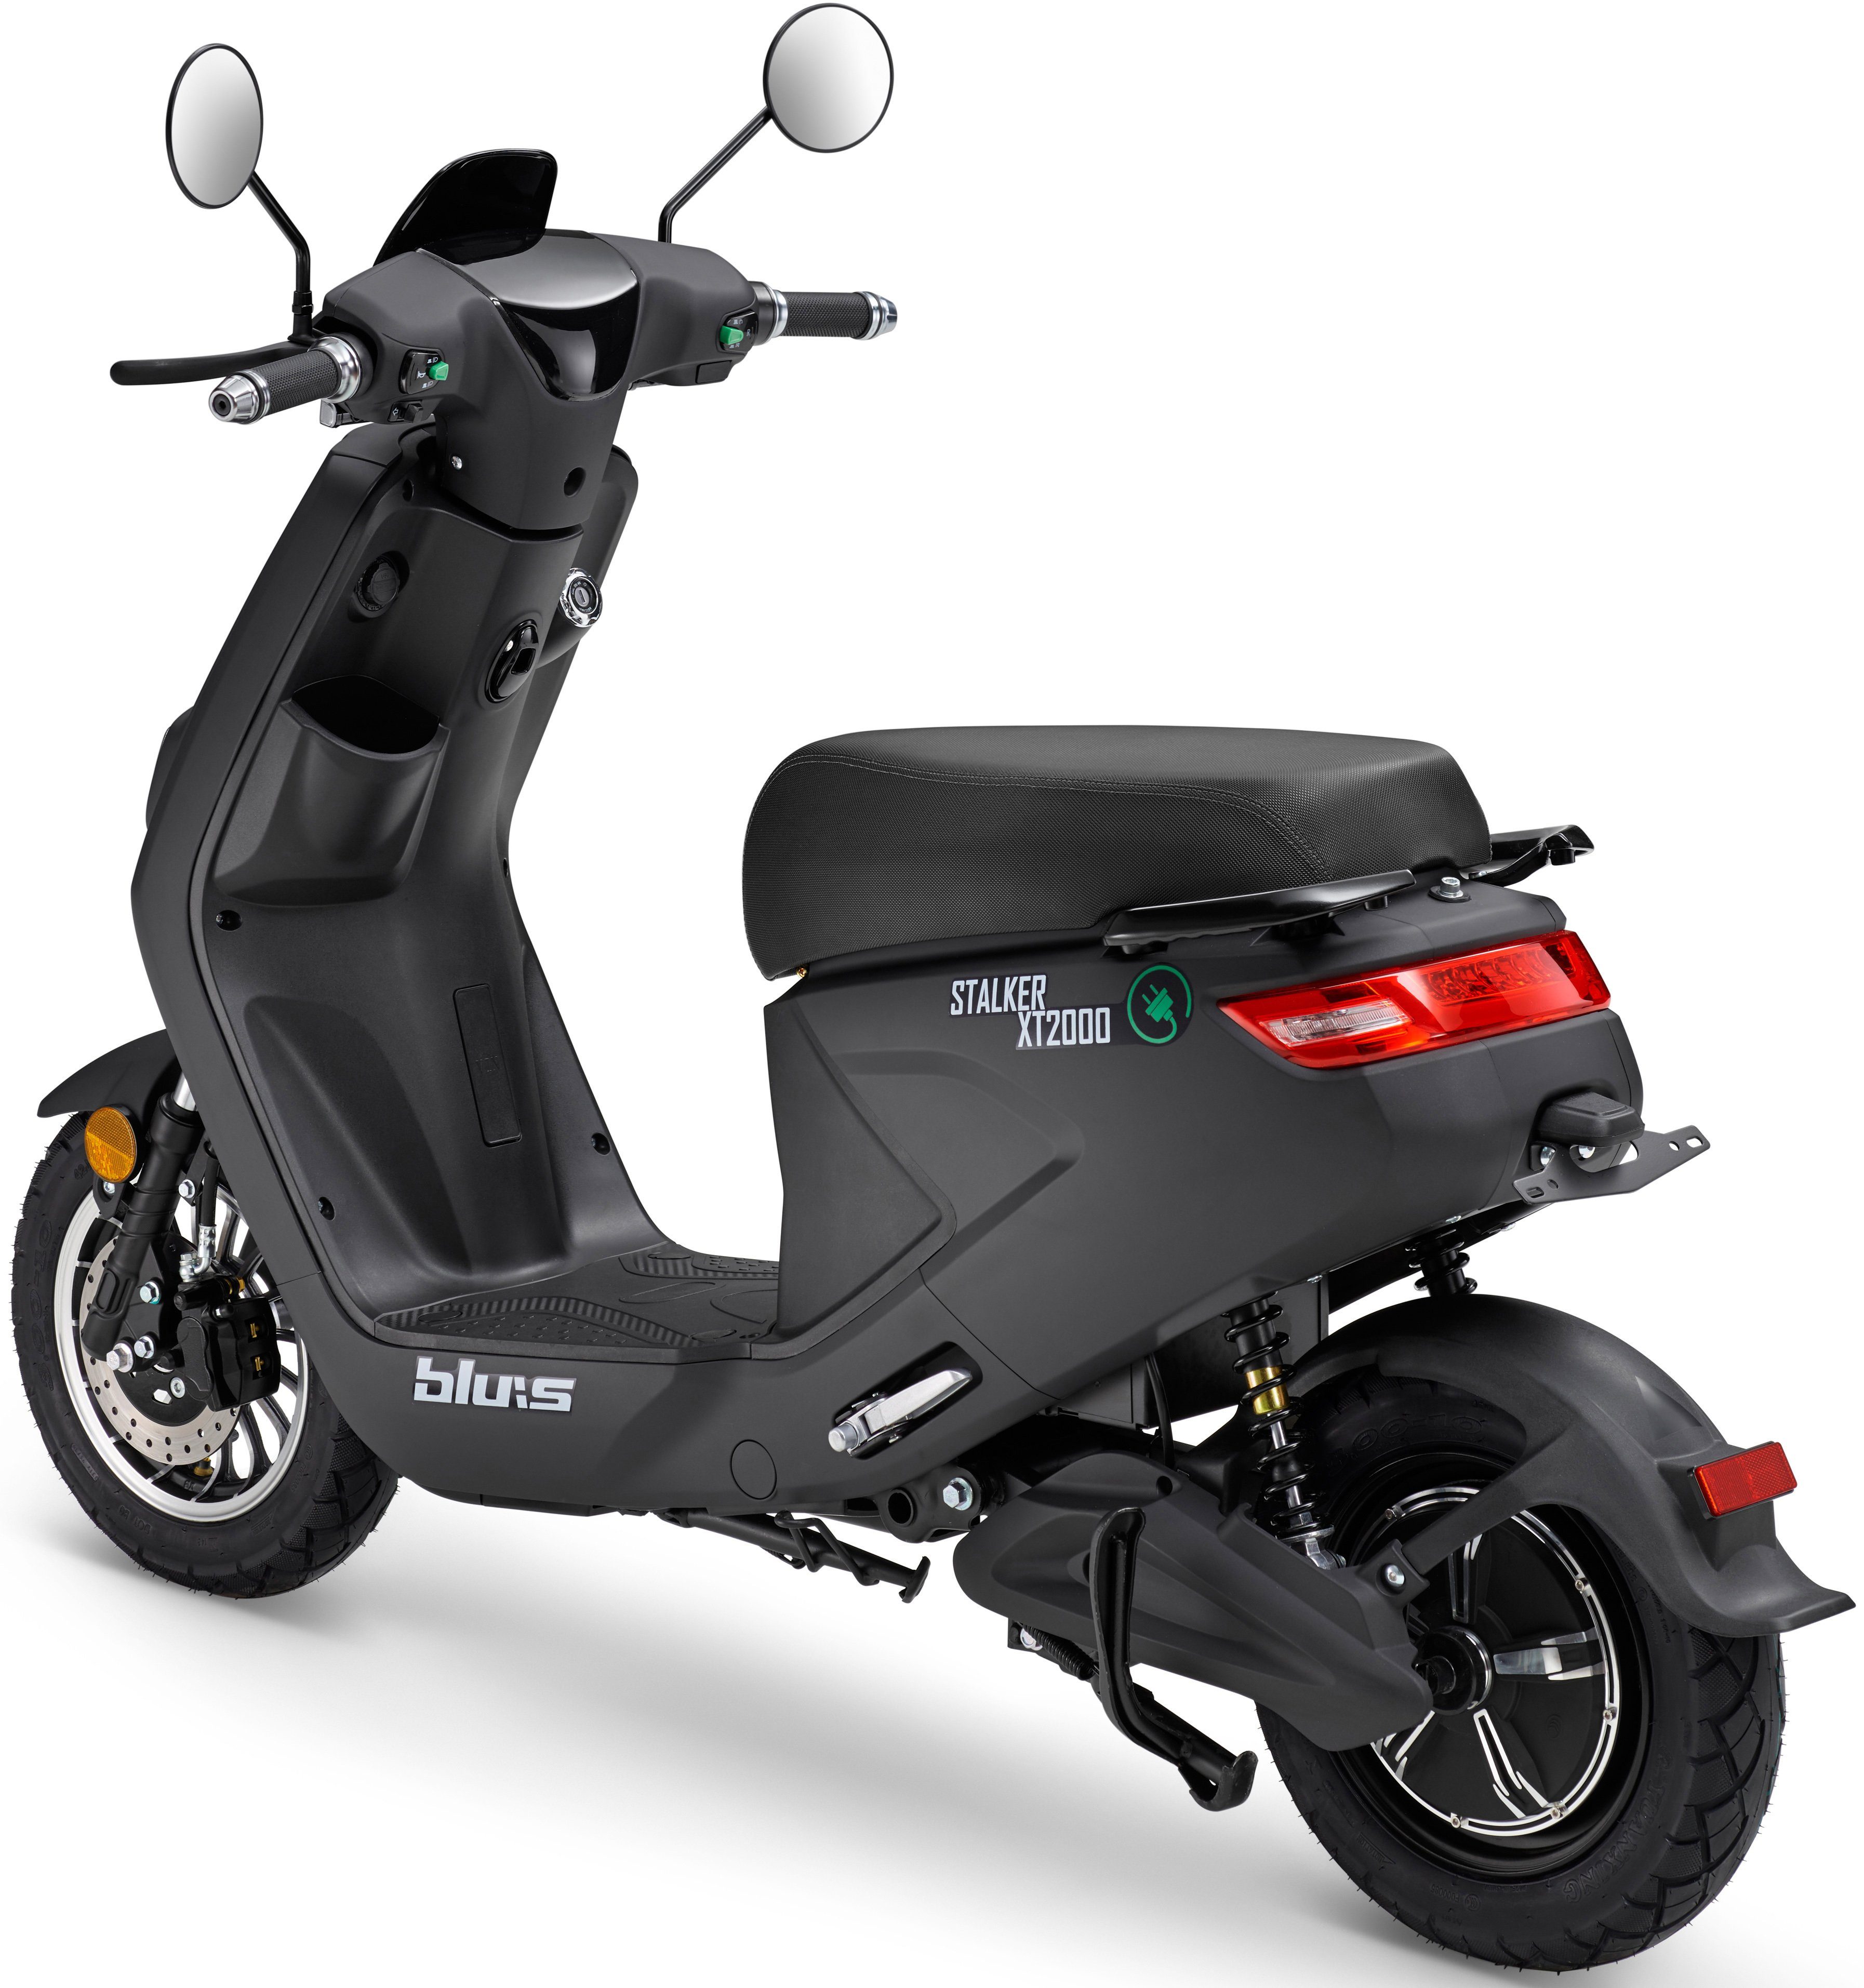 W, Blu:s E-Motorroller XT2000, km/h 45 2000 schwarz